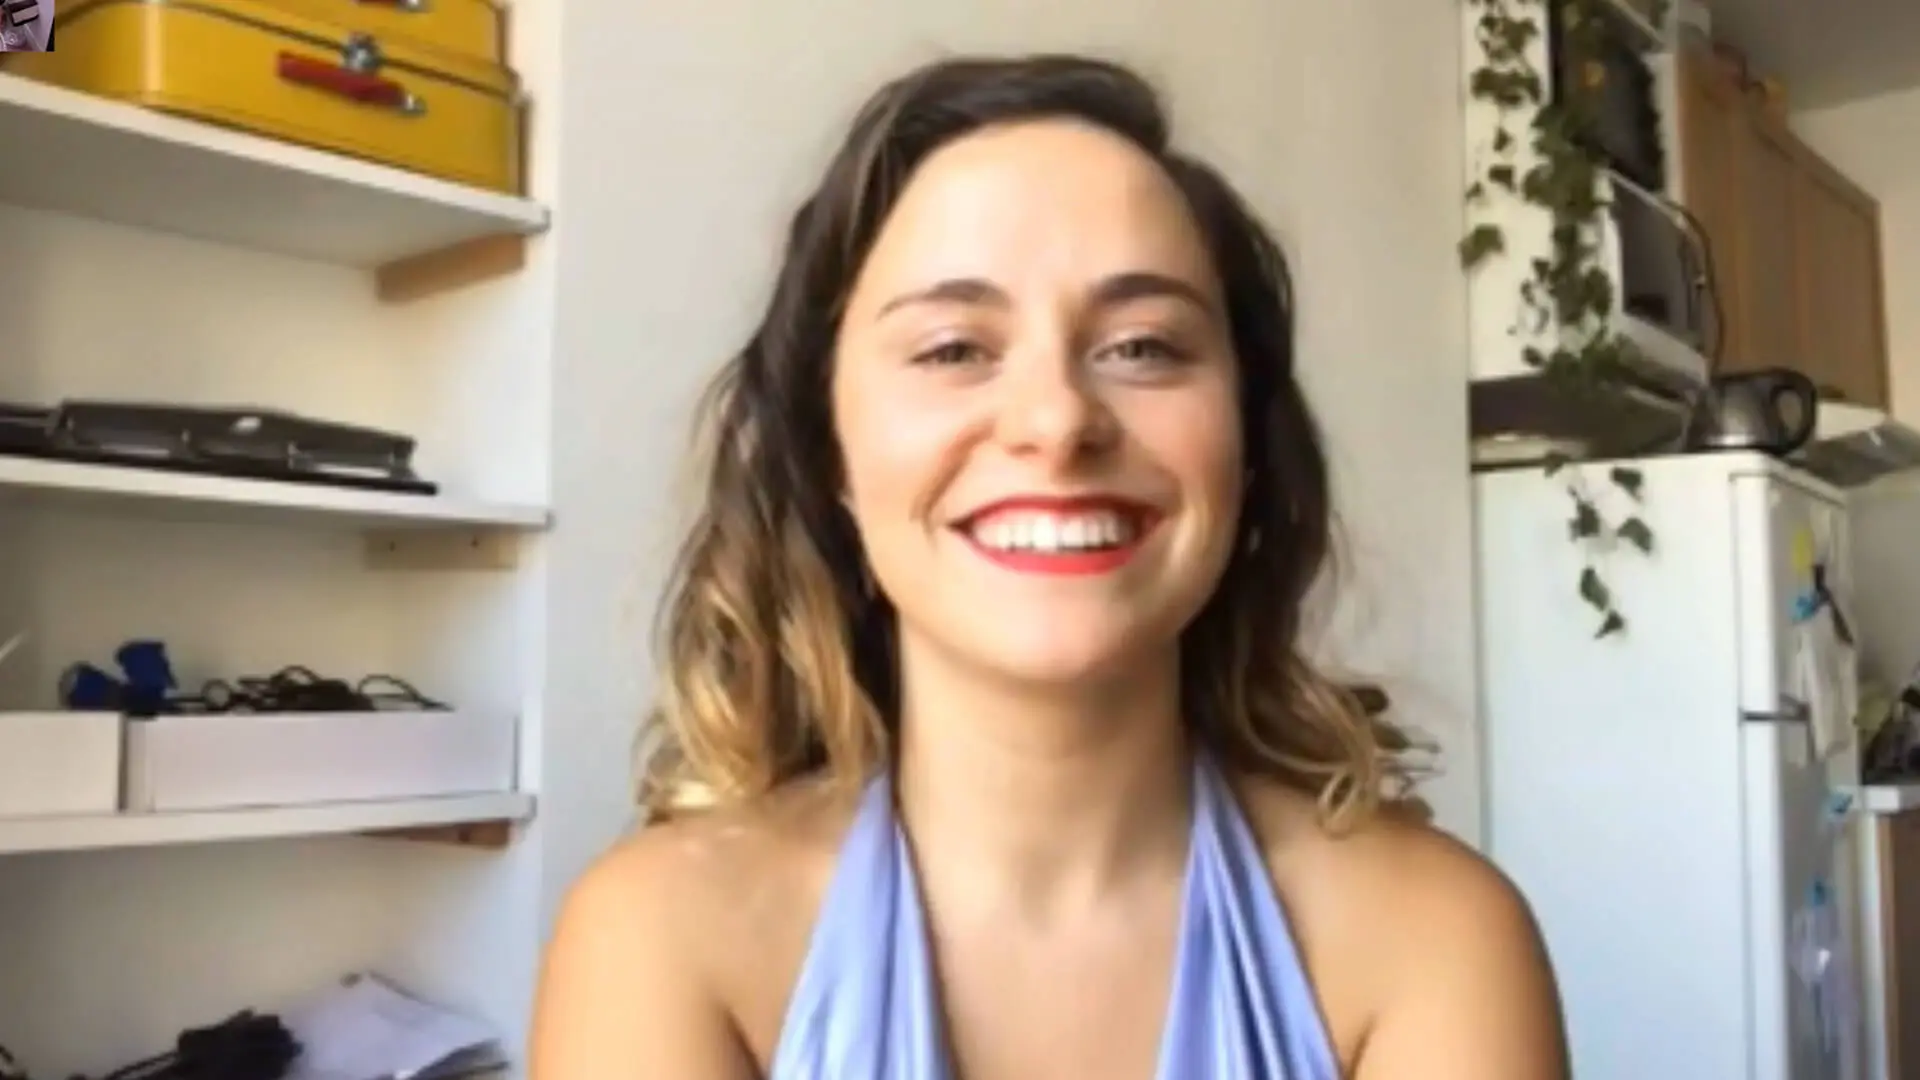 Vidéo : être une femme sur Youtube (et avoir des seins)